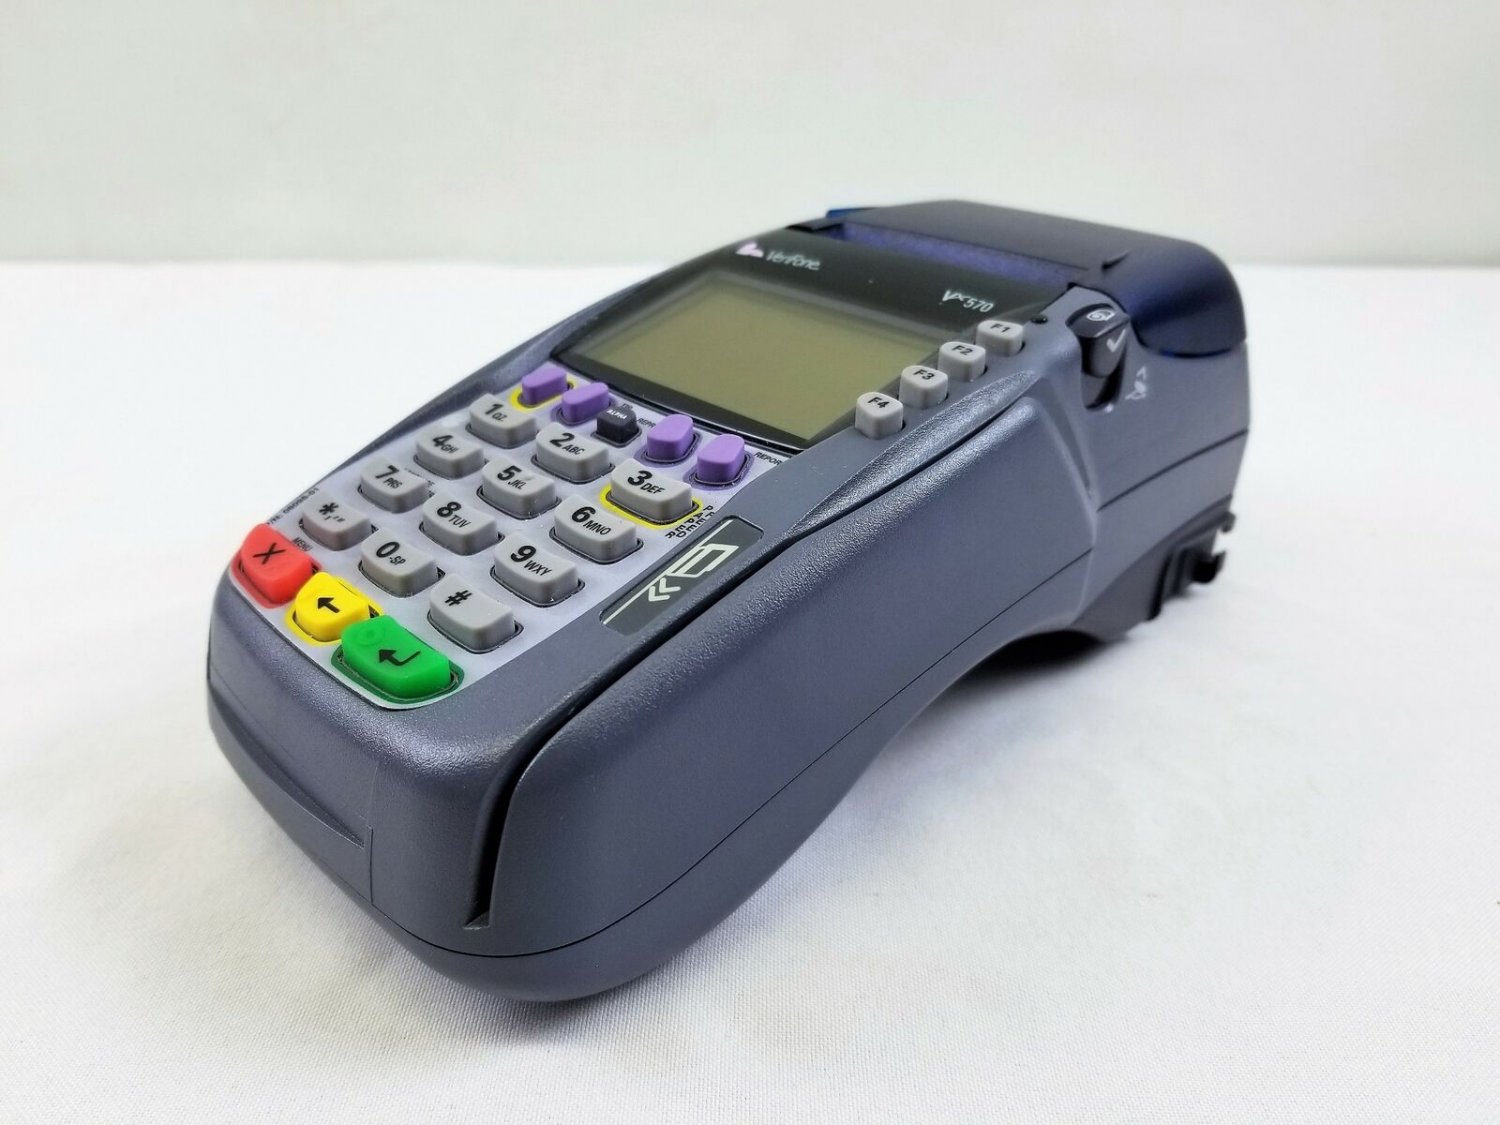 vx570 credit card terminal